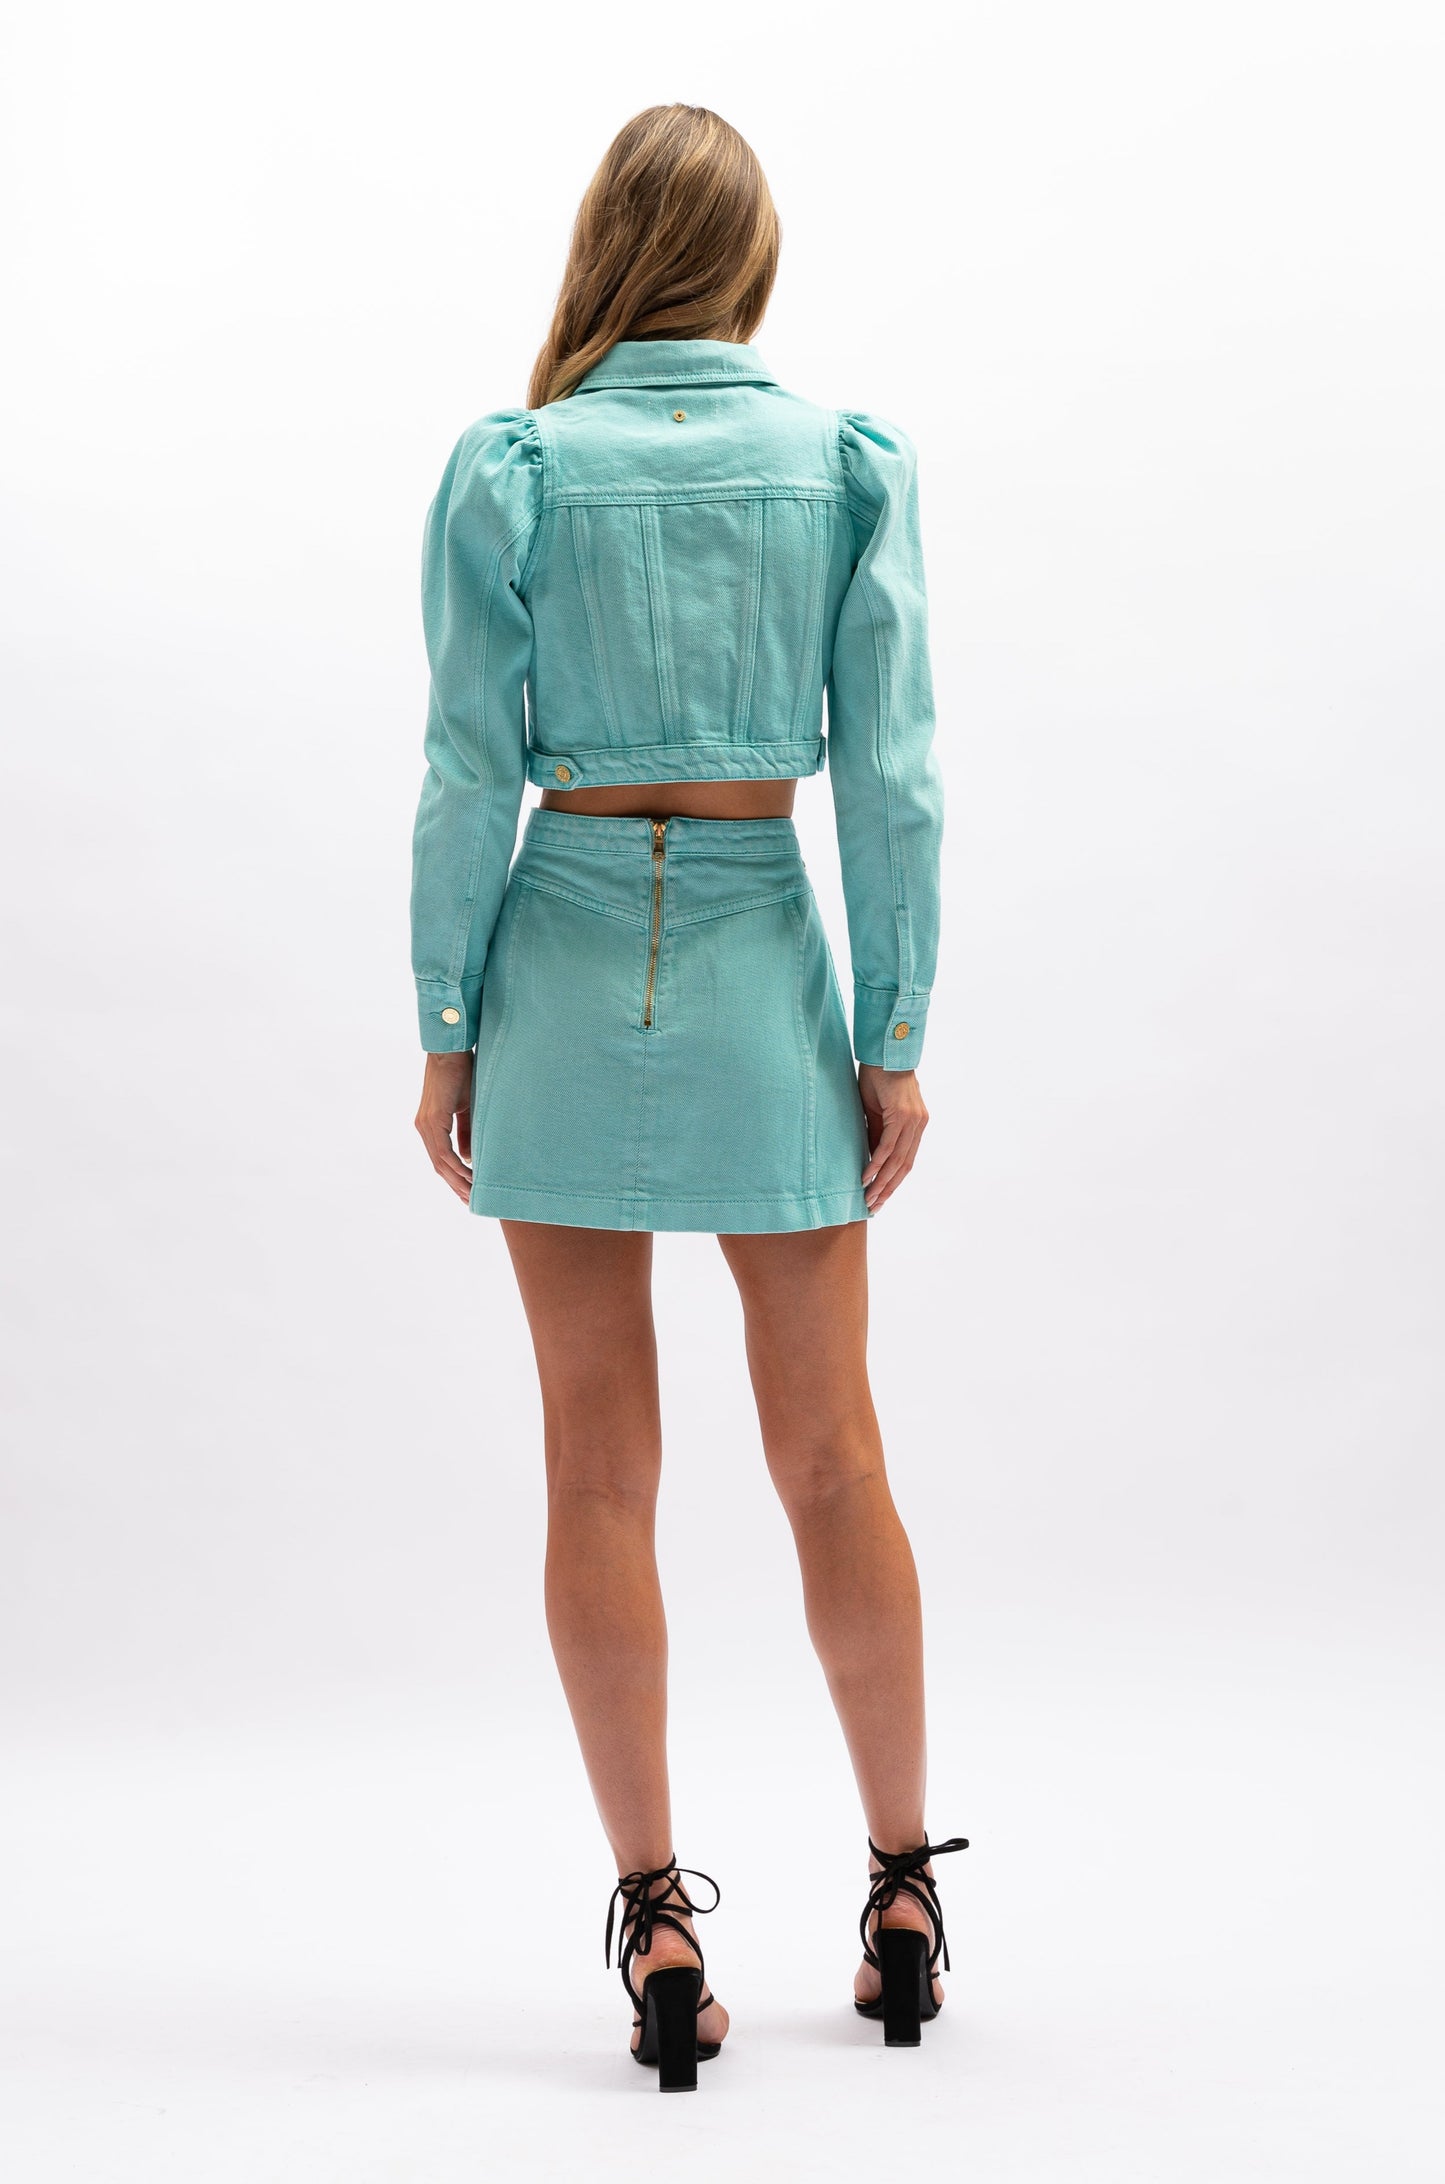 Aureta Lottie Mini Skirt - Aquamarine